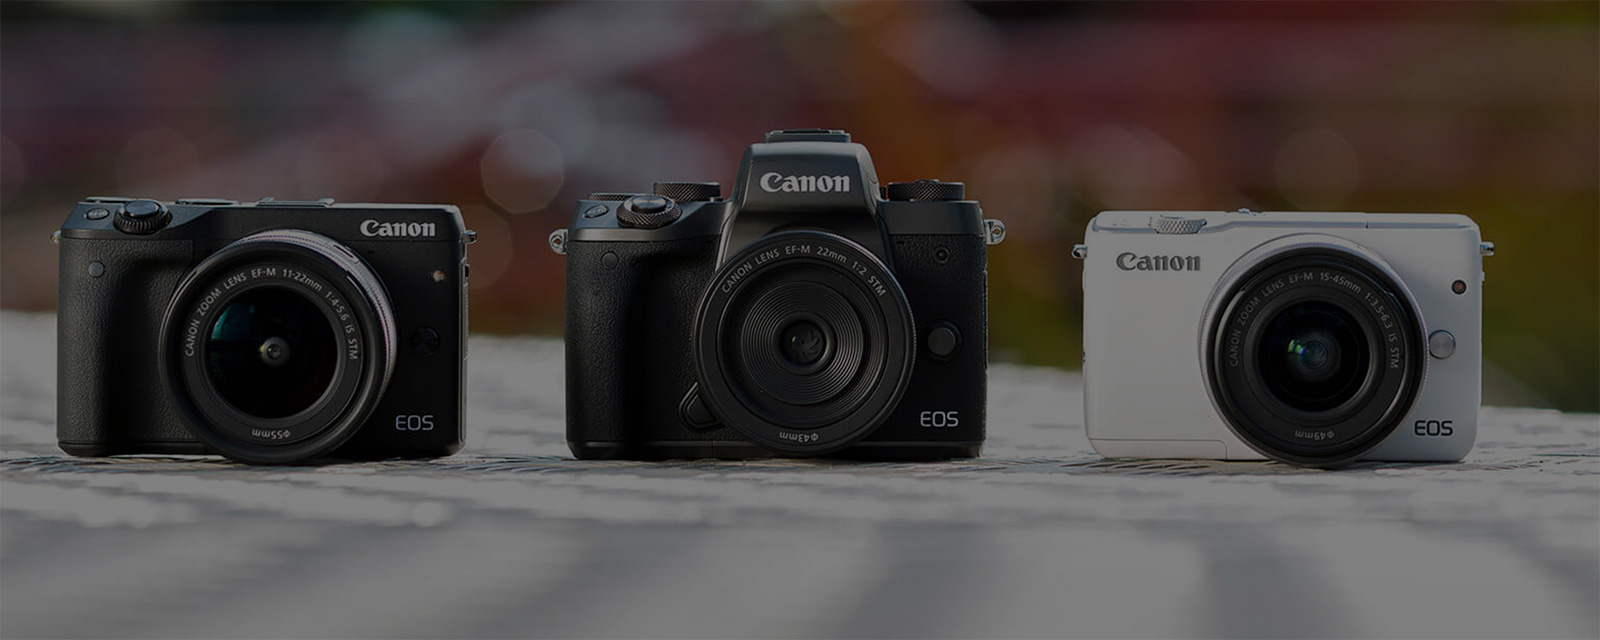 Canon EOS M5 family